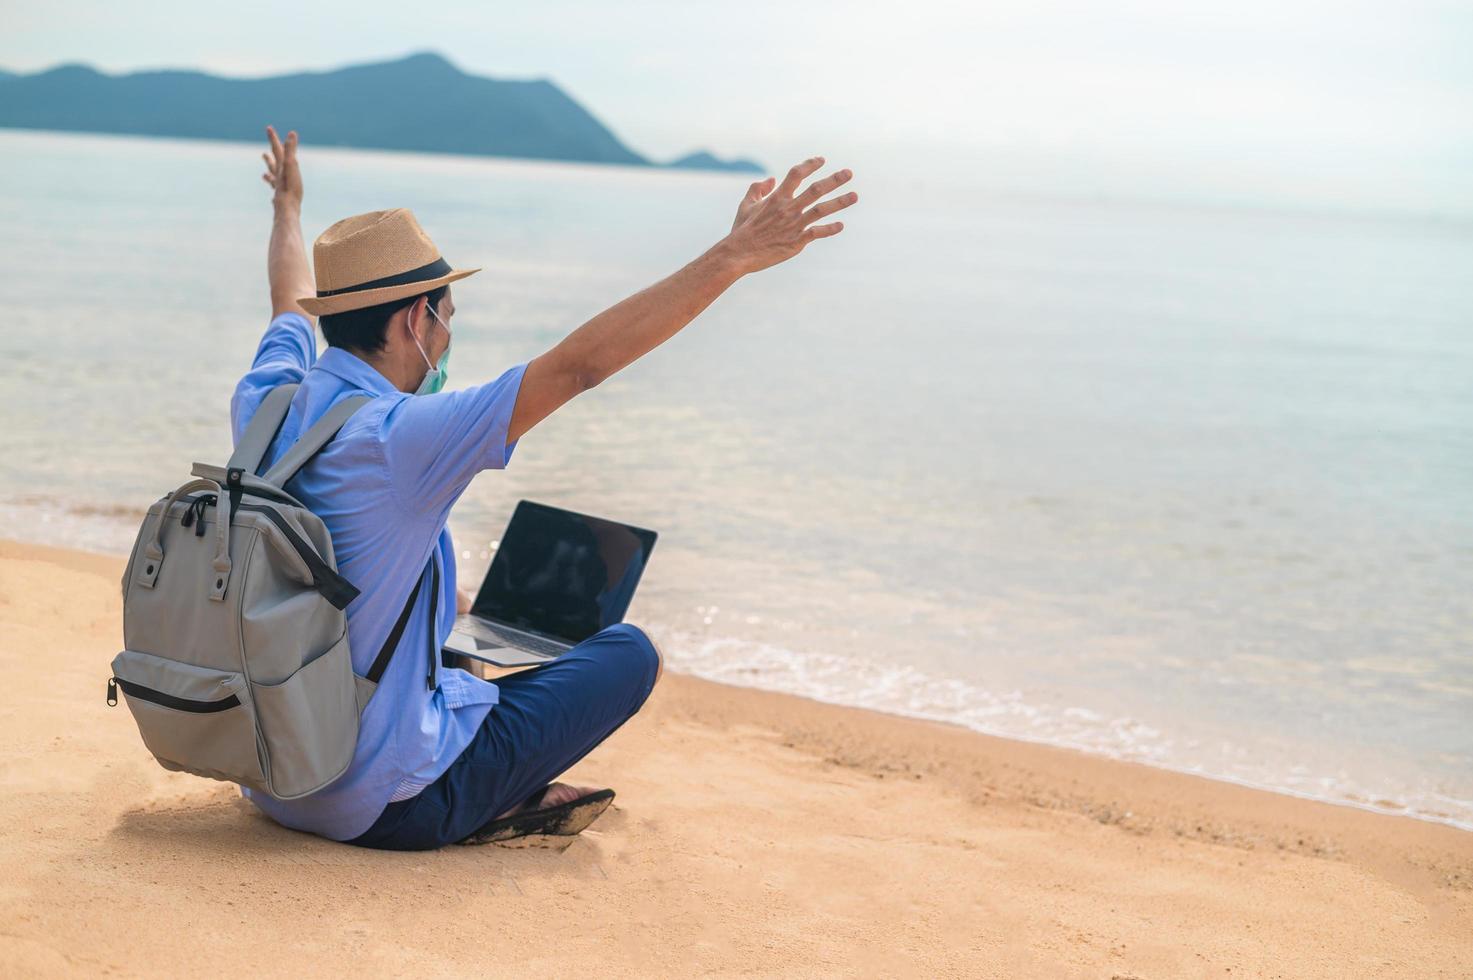 Mann trägt Maske mit Laptop-Computer am Strand Meer und Mann Reisen Urlaub Phuket Sandbox Thailand sind Freiheit Leben Finanzen foto